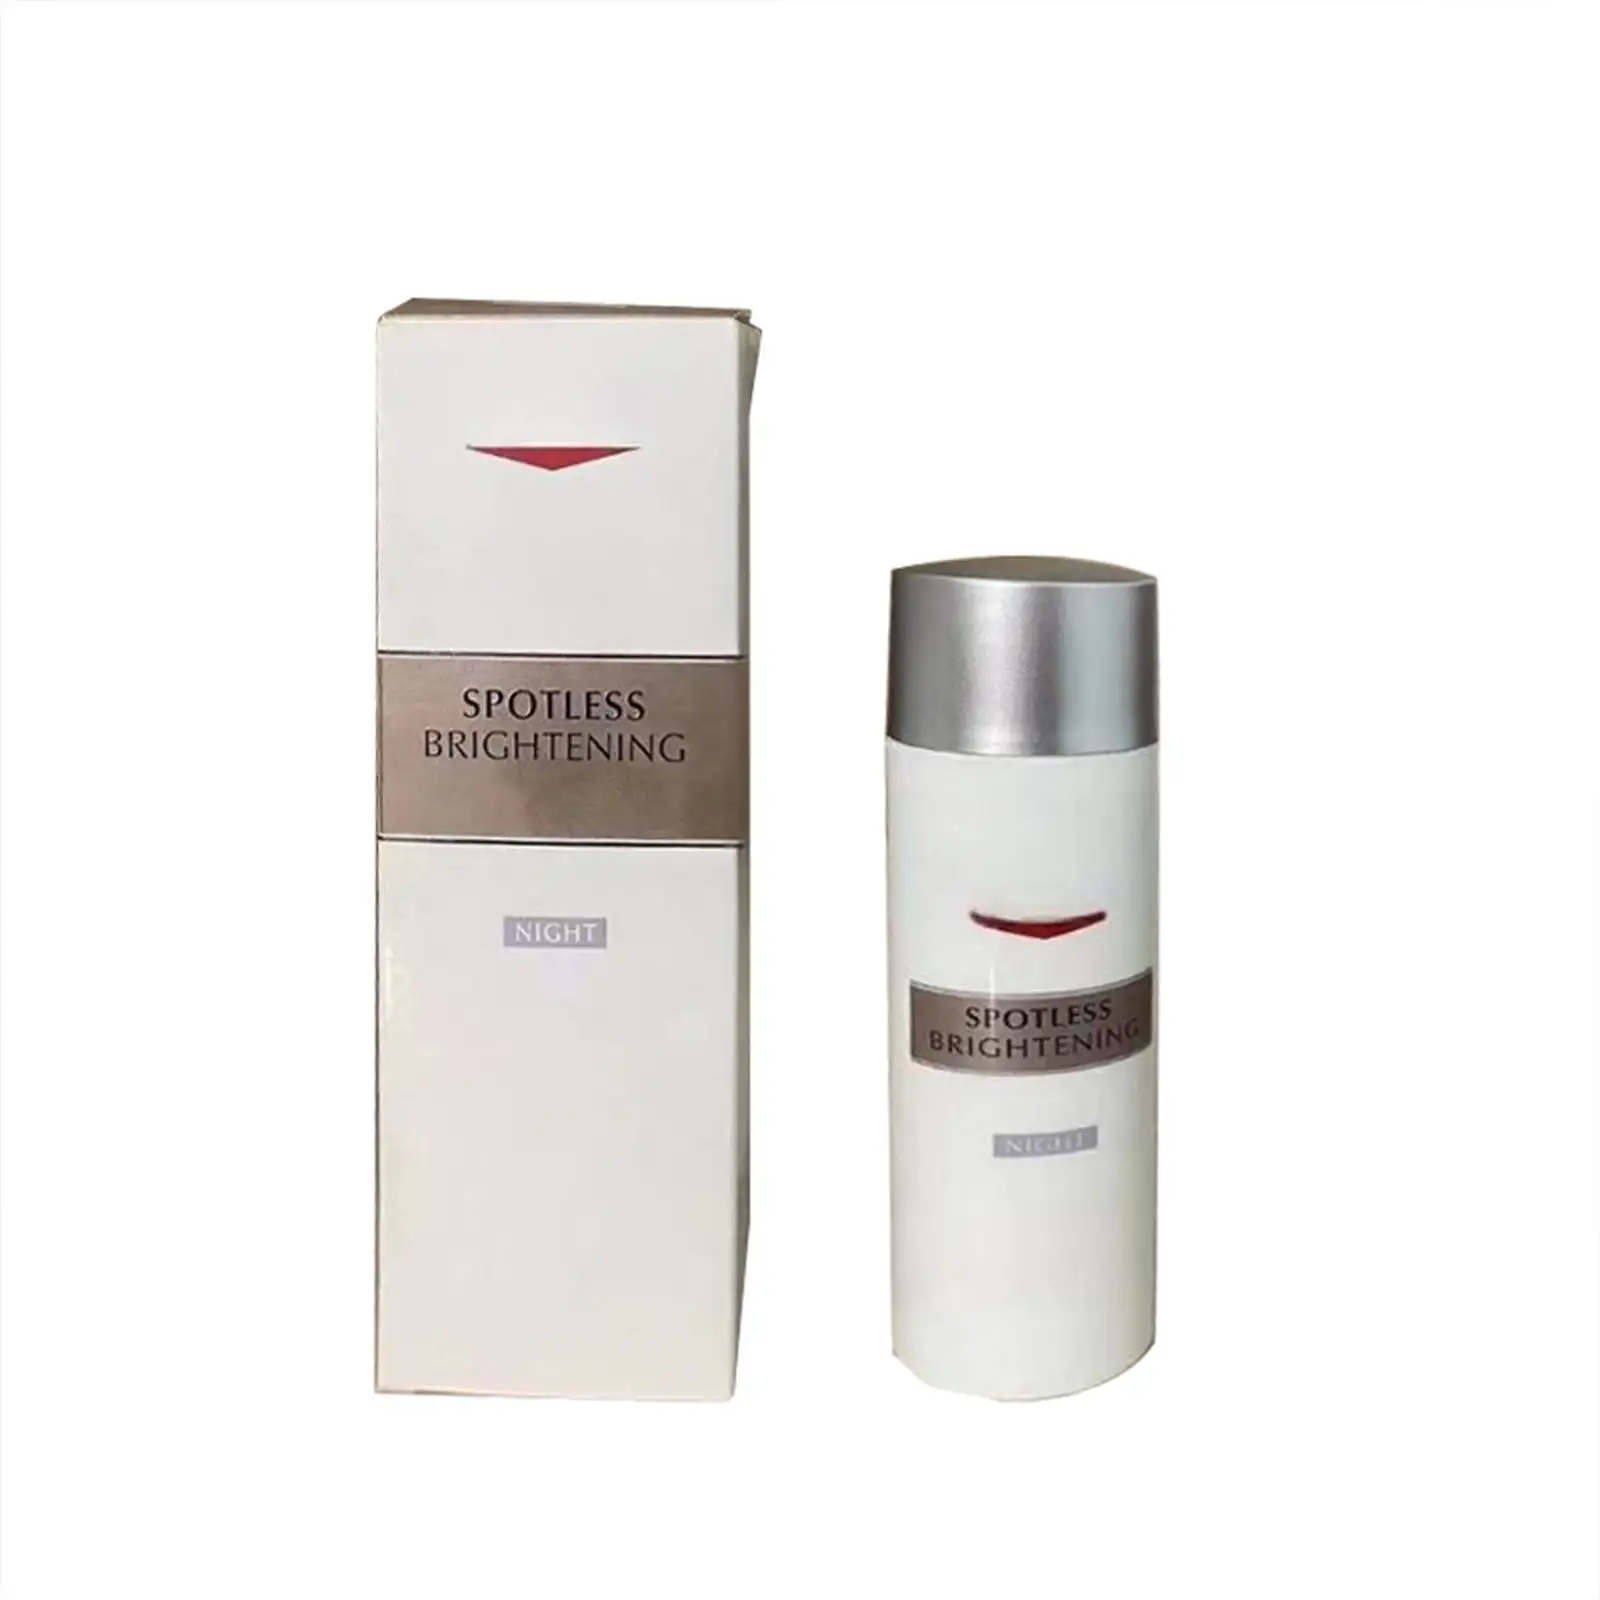 Utilizado durante el día y por la noche crema facial antienvejecimiento crema facial antiacné crema facial y loción (nuevo)